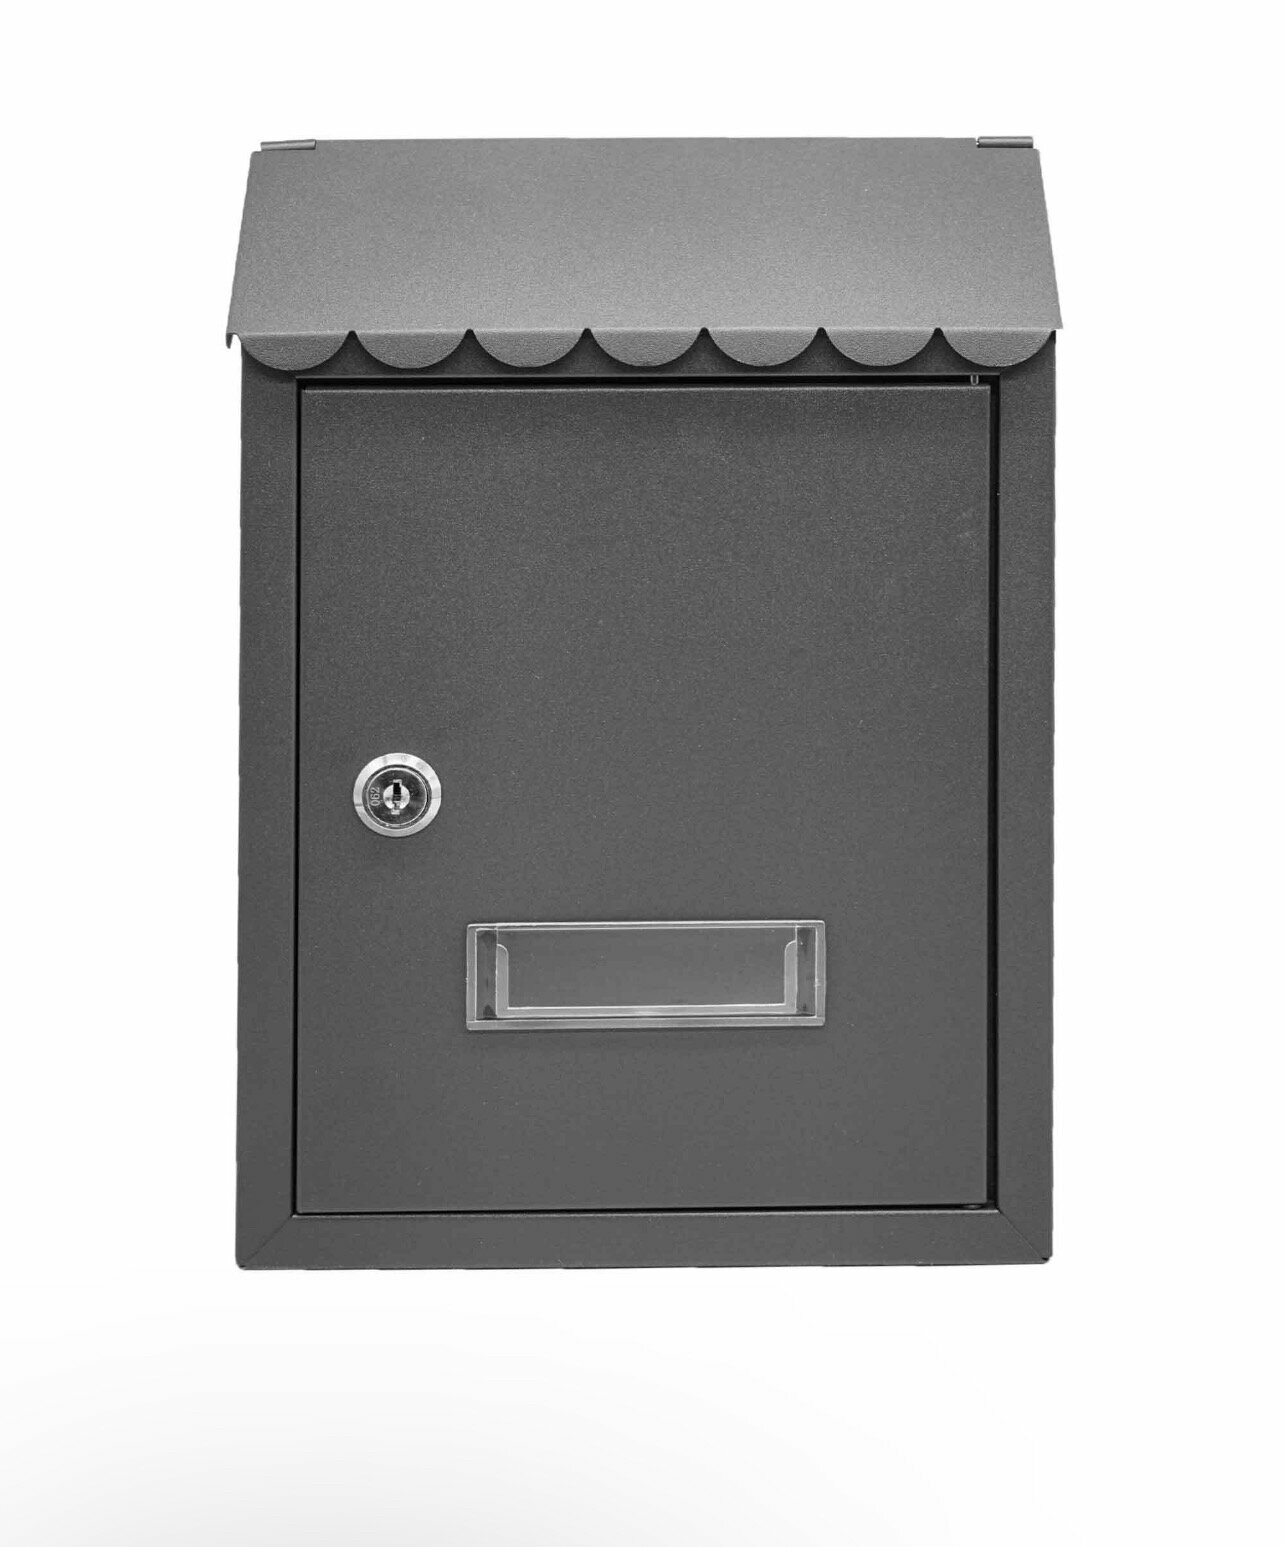 Почтовый ящик MASTER LOCK K-38013 цвет: черный / почтовый ящик металлический/ почтовый ящик с замком/ ящик почтовый/ почтовый ящик с замком уличный - фотография № 2